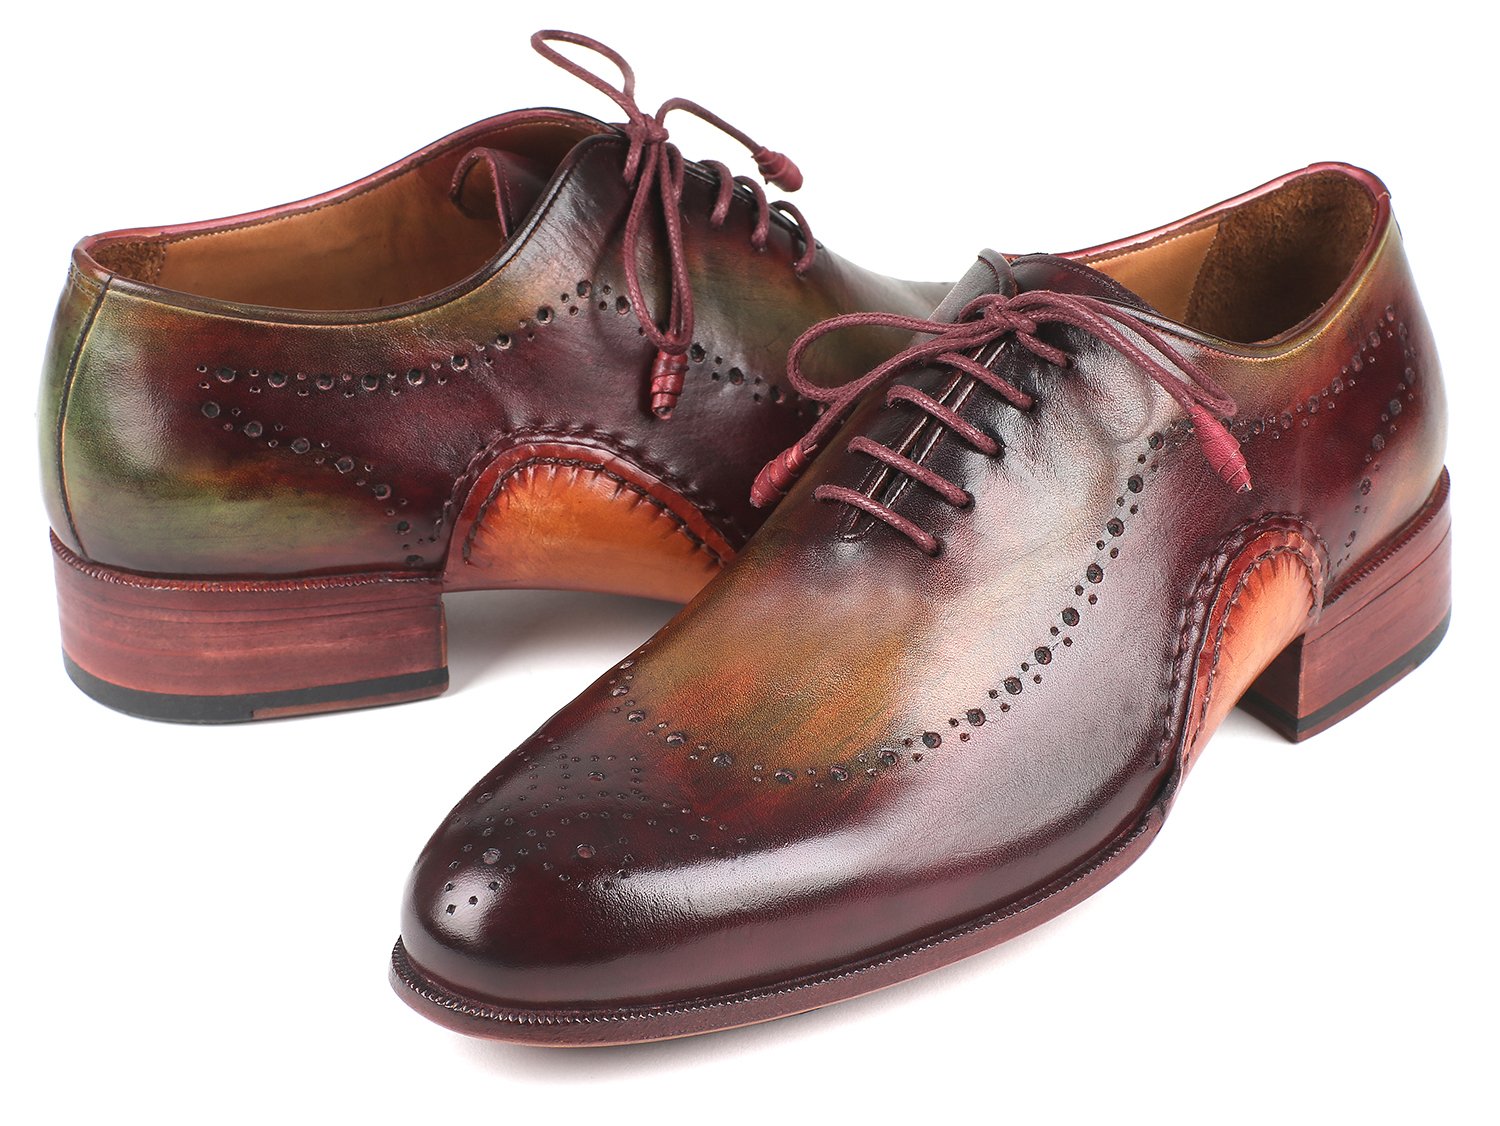 Paul Parkman 726 Green / Burgundy Oxfords Shoes.